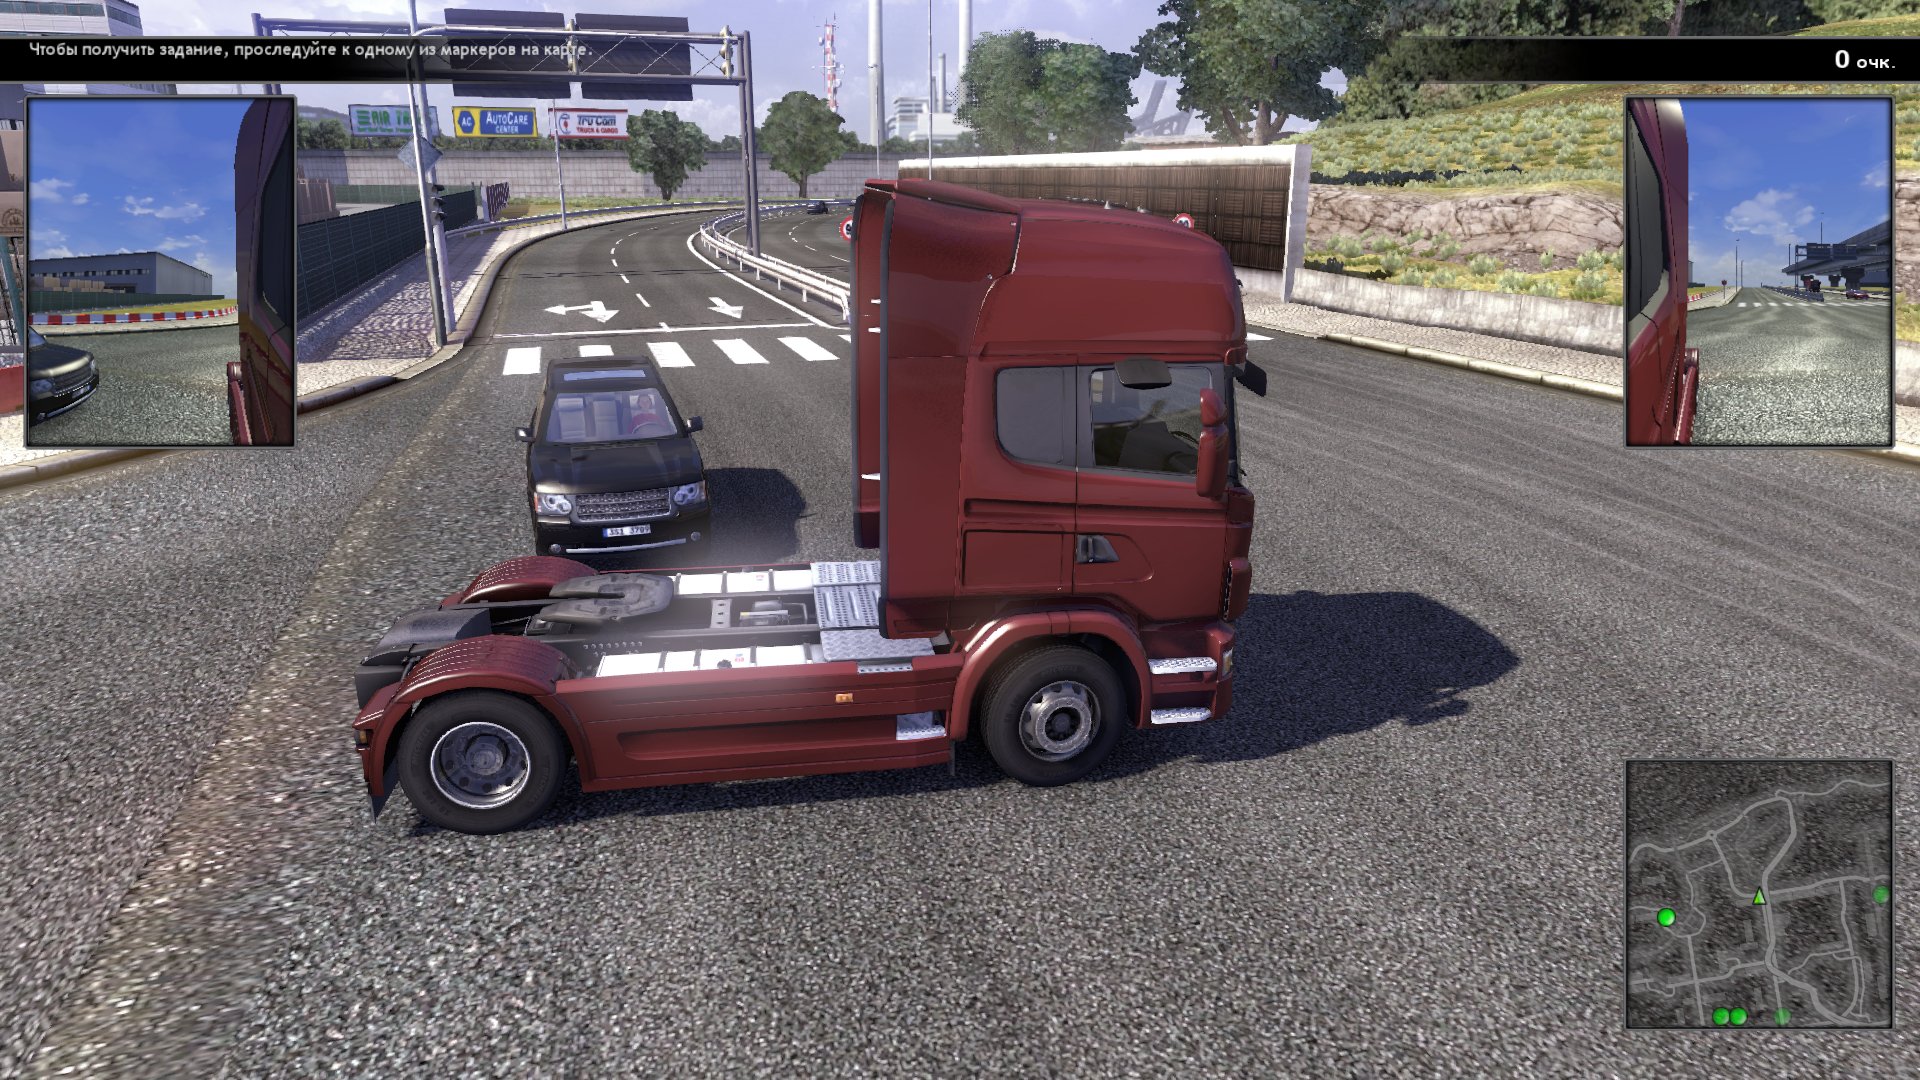 Игра truck driving simulator. Игра Scania Truck Driving Simulator. Скания трак драйв симулятор. Scania Truck Driving Simulator 2. Scania.Truck Driving Simulator.v 1.5.0.